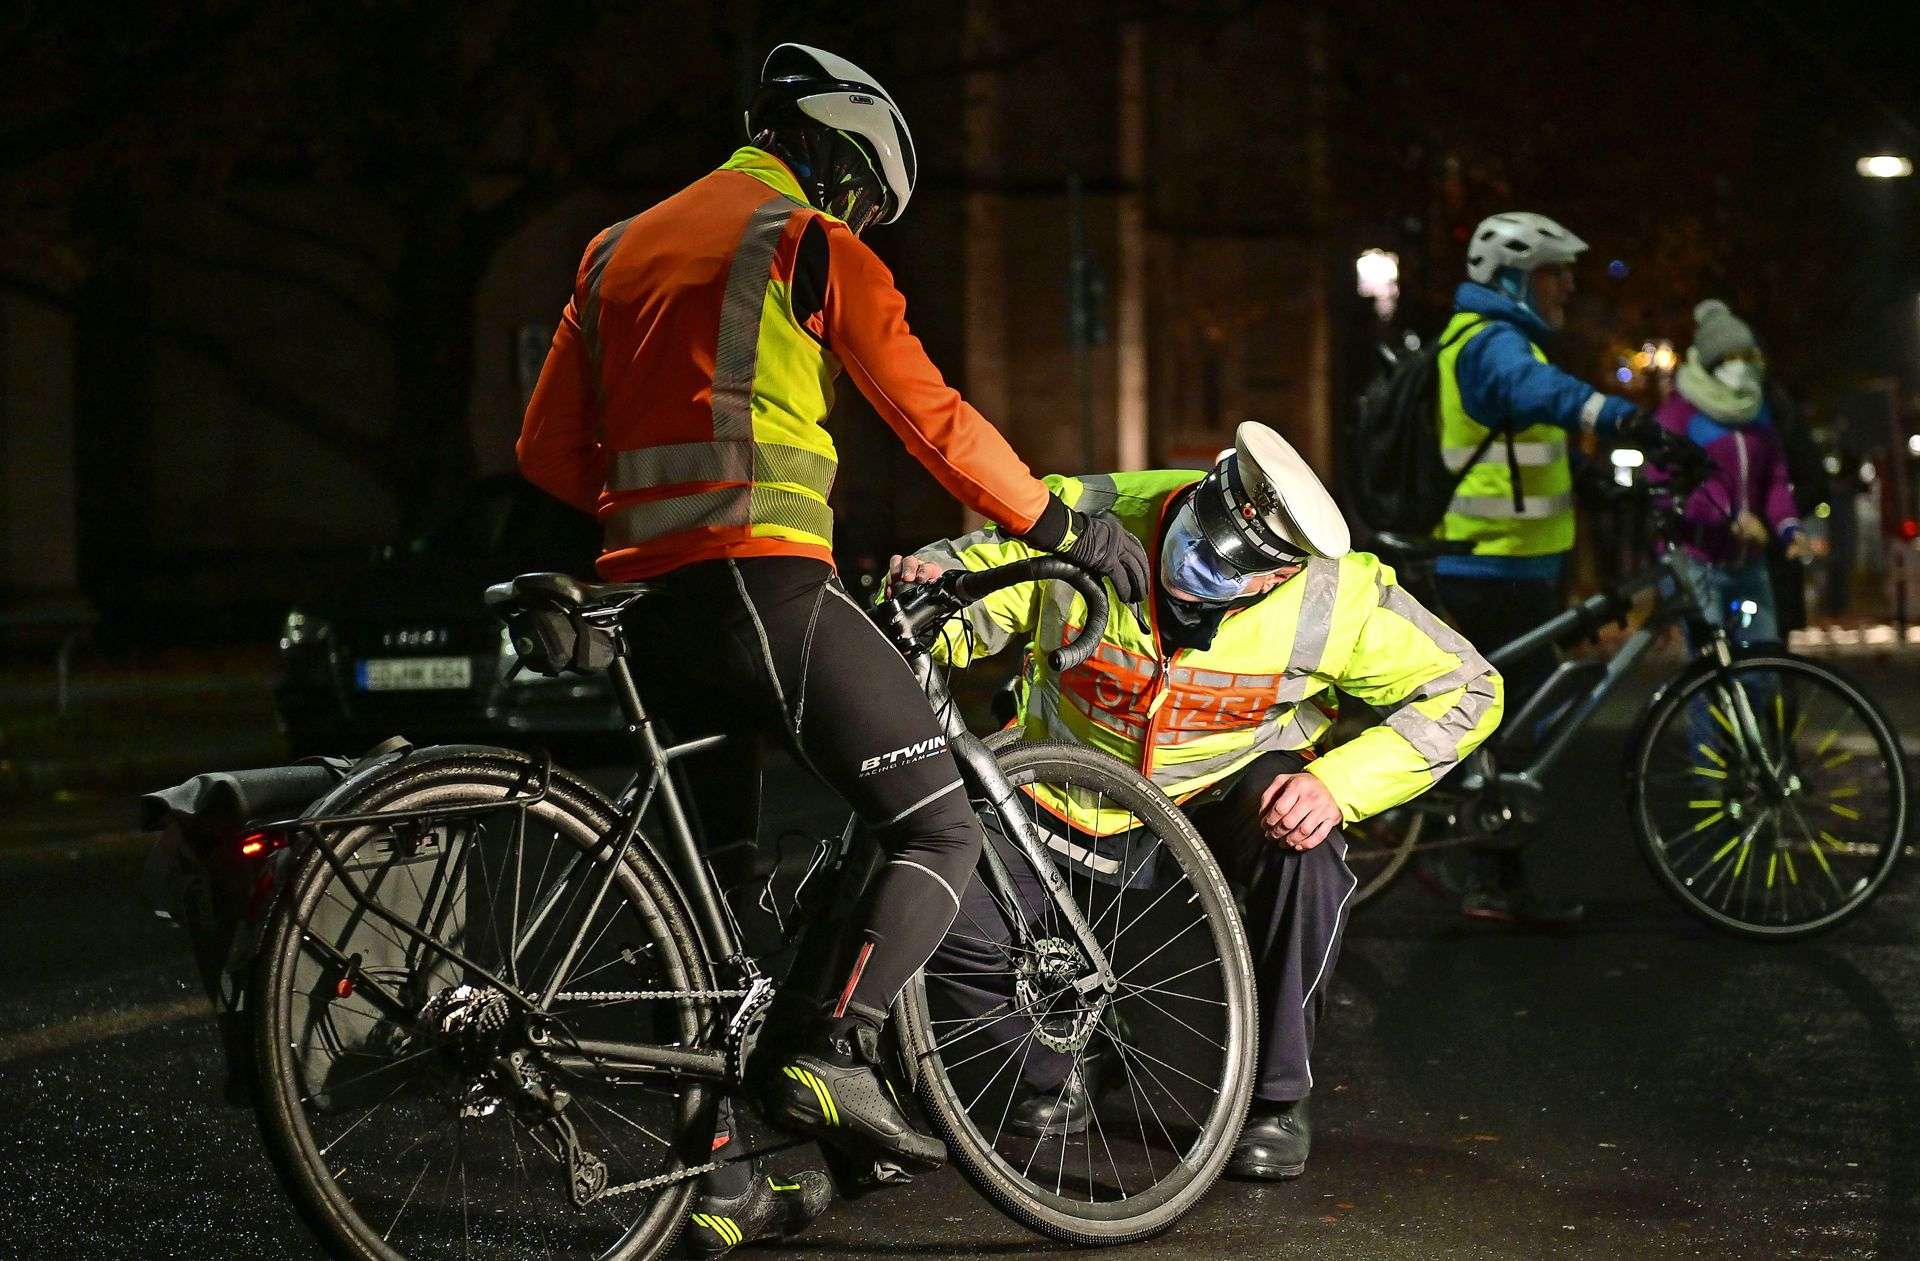 Lichtercheck der Polizei in Stuttgart Wenn am Fahrrad die